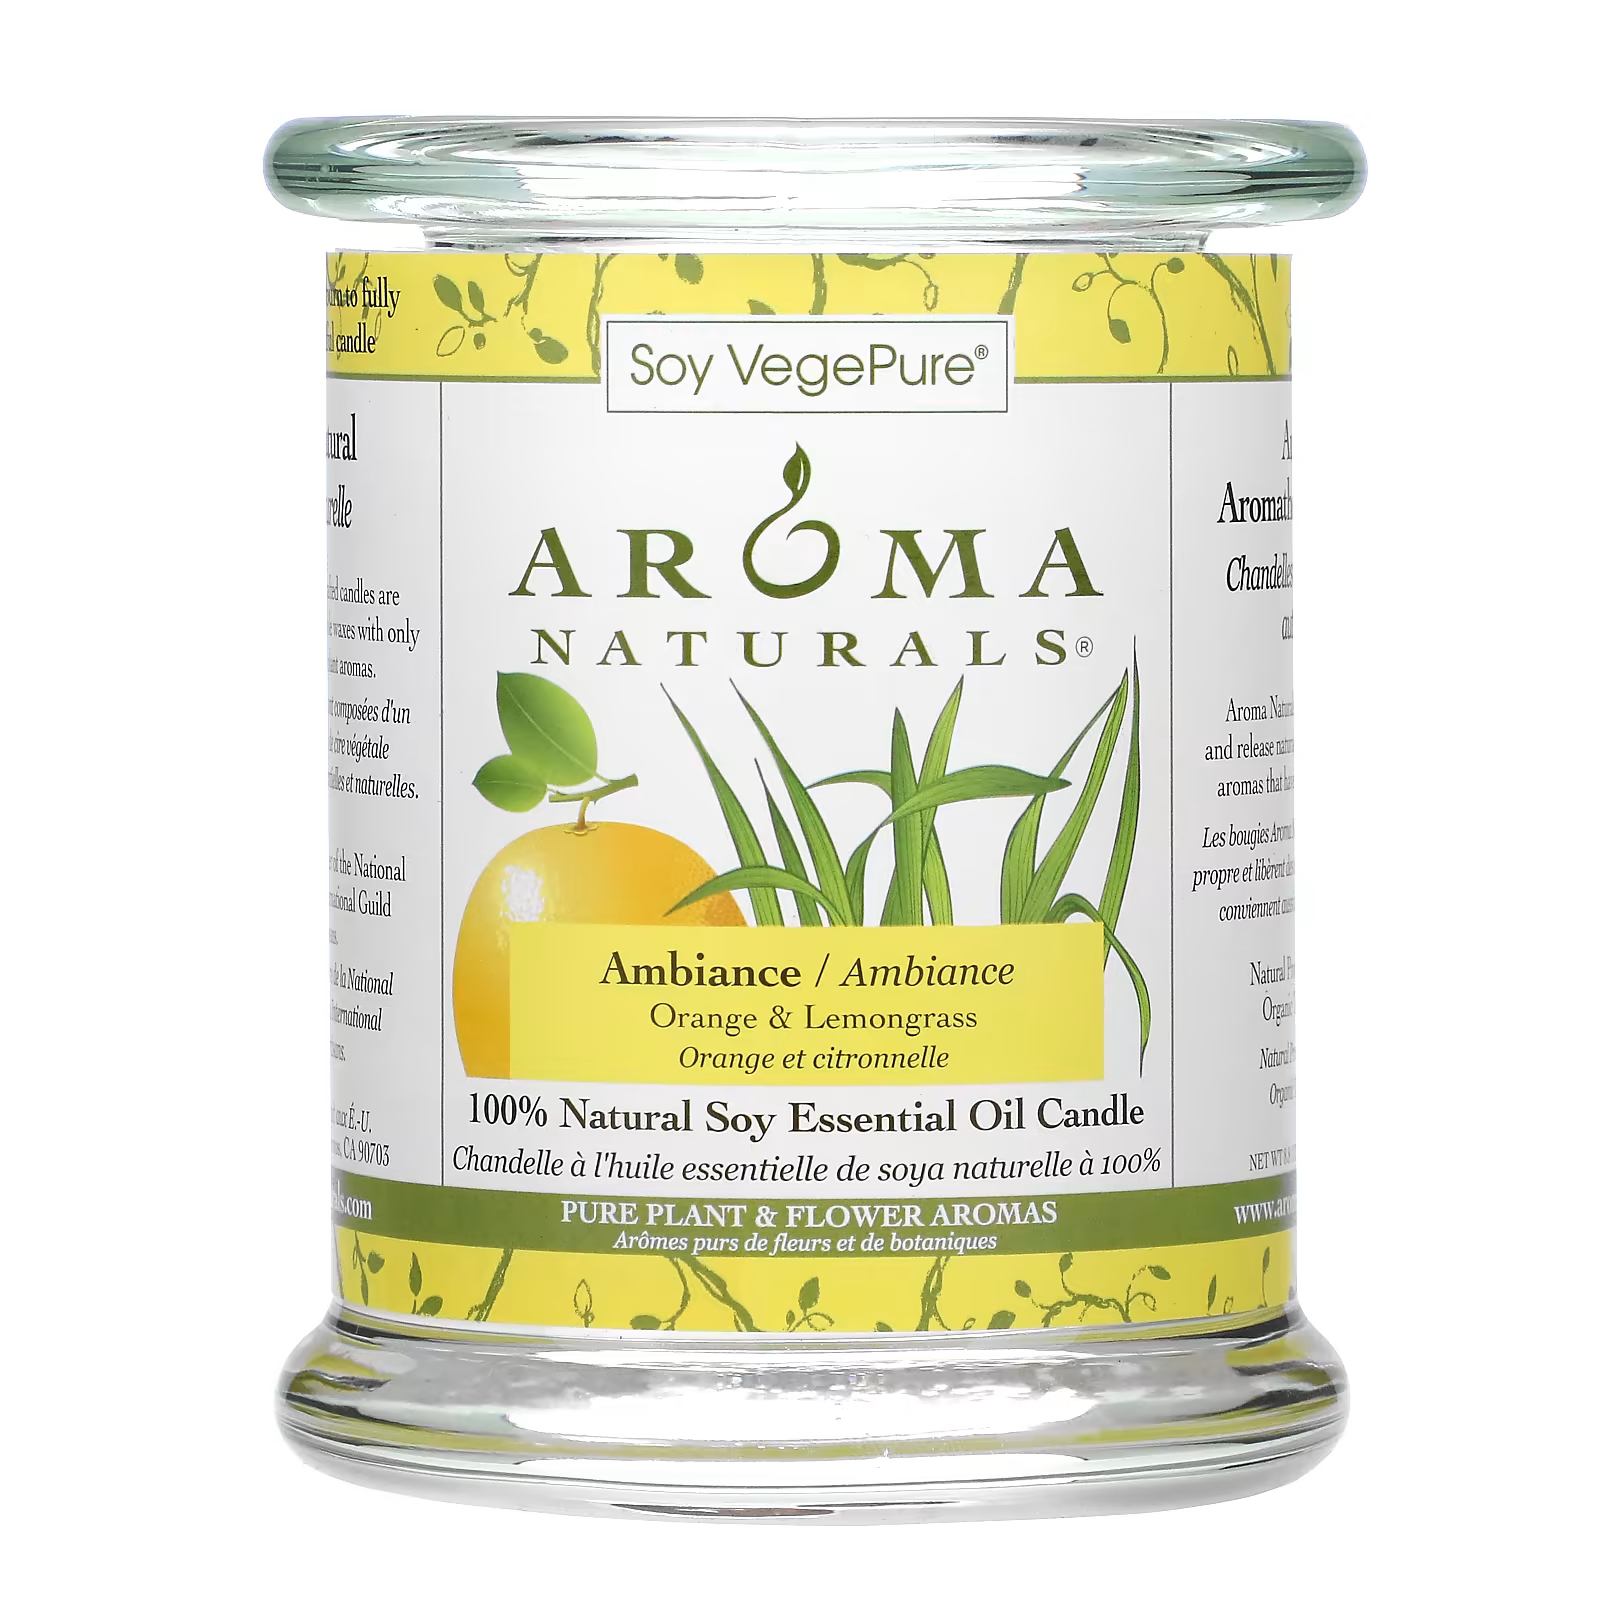 Soy VegePure 100% натуральное соевое эфирное масло, свеча Ambiance Orange & Lemongrass, 8,8 унции (260 г) Aroma Naturals